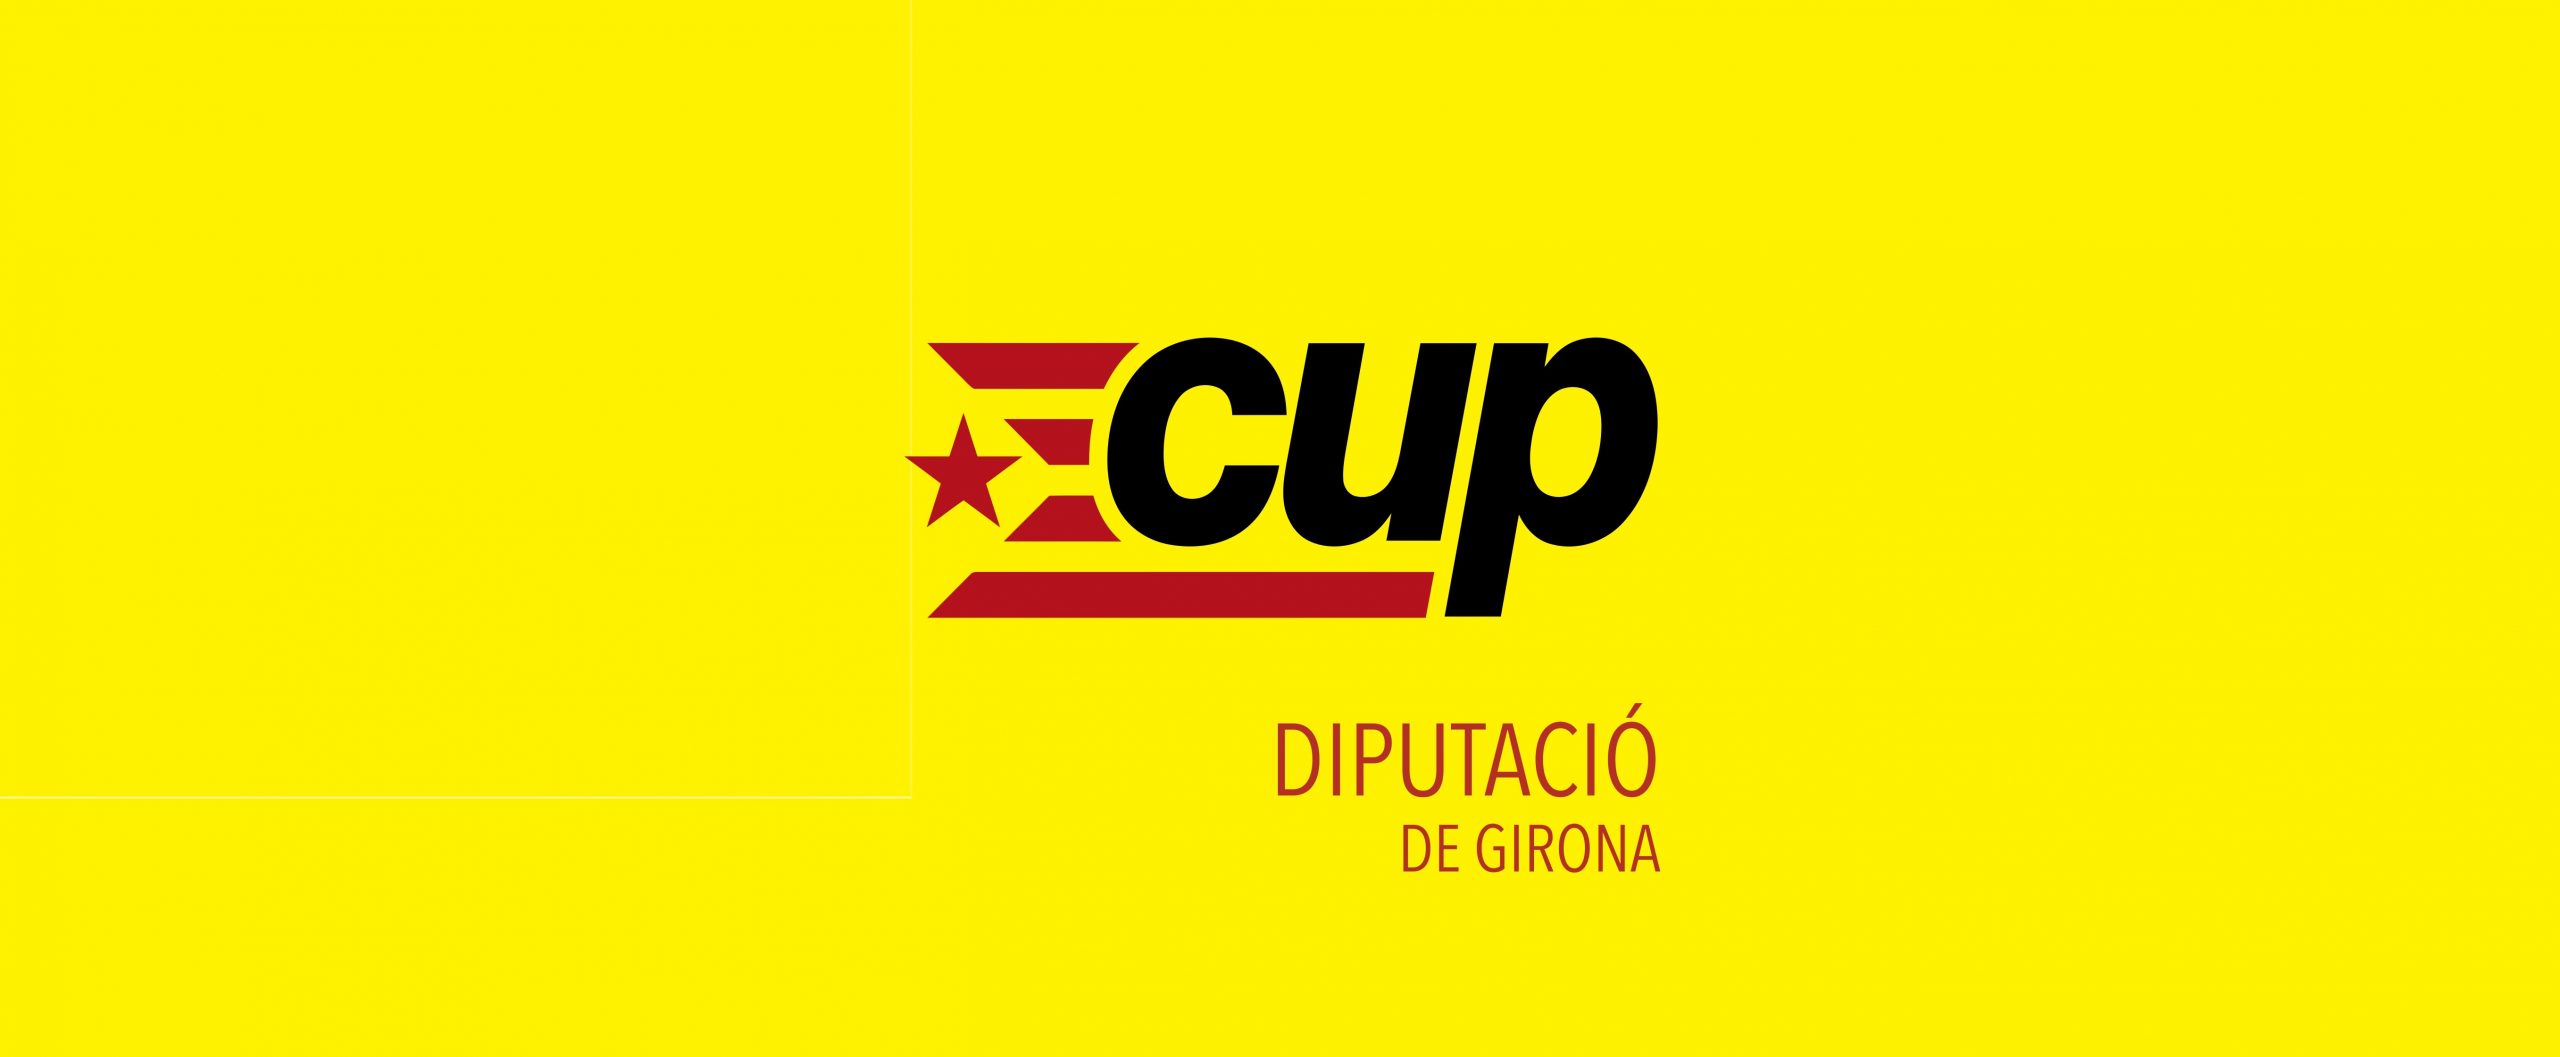 CUP Diputació de Girona